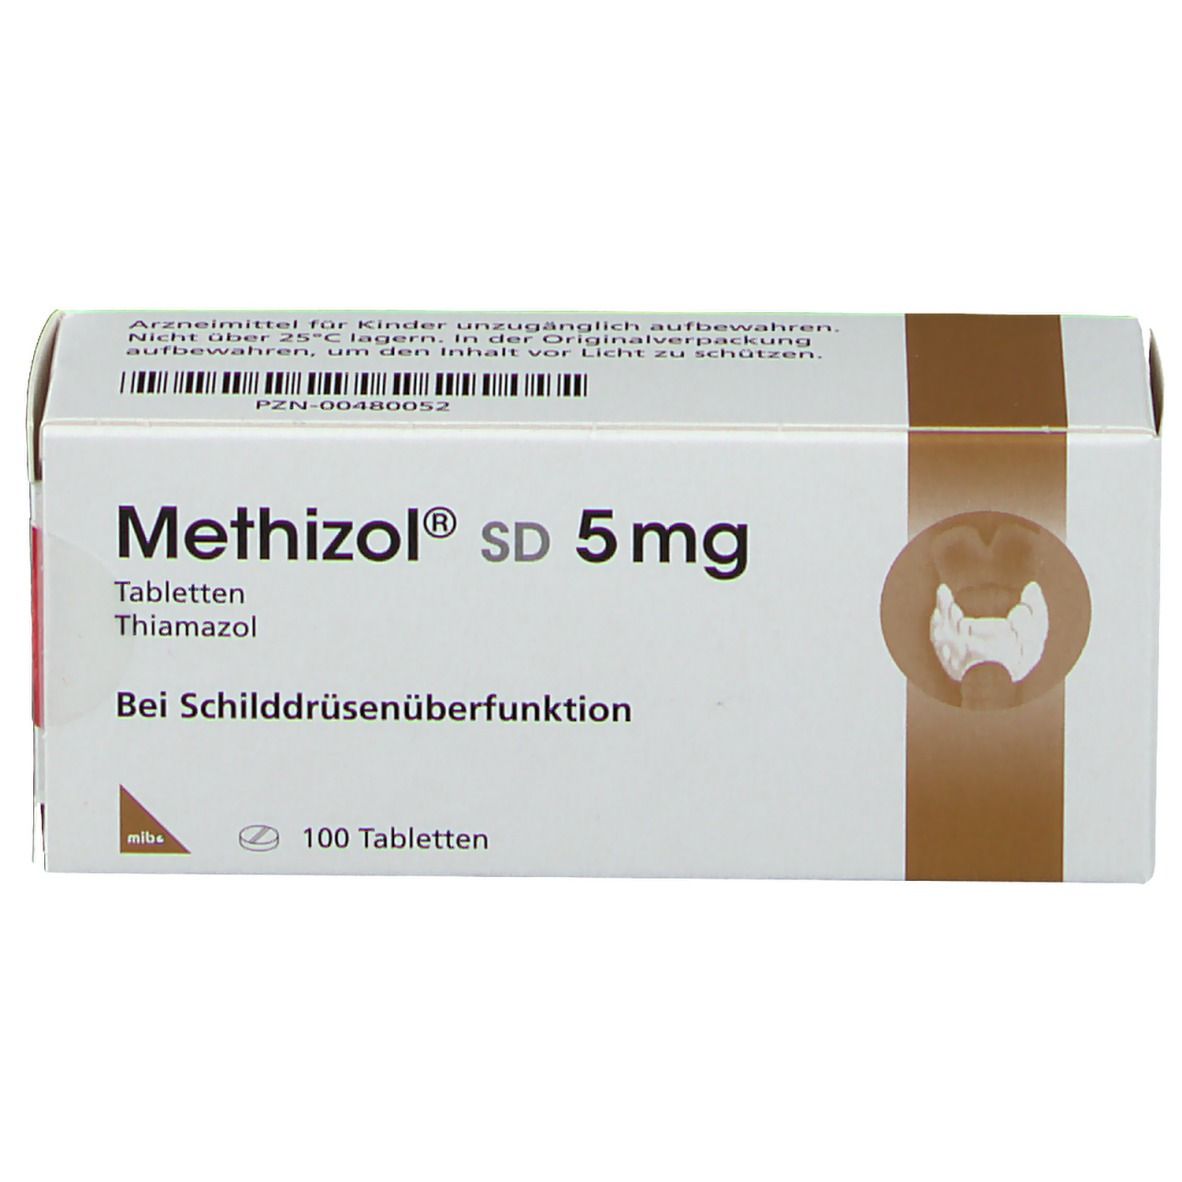 Methizol® SD 5 mg 100 St - shop-apotheke.com